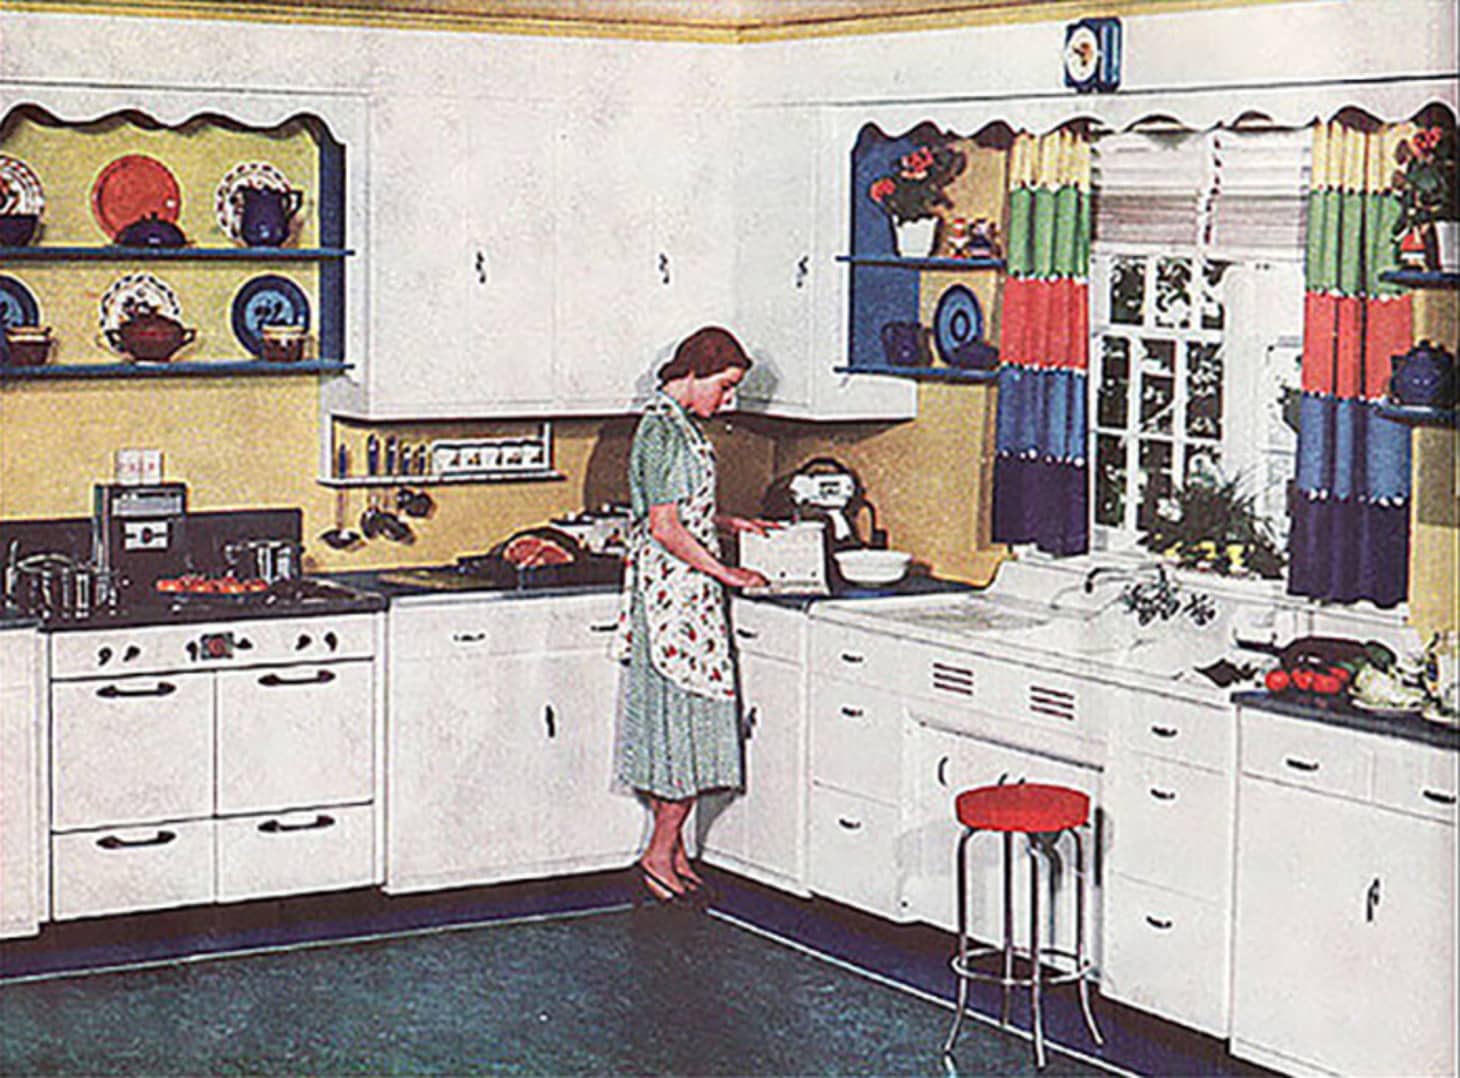 1930's kitchen sink cabinets